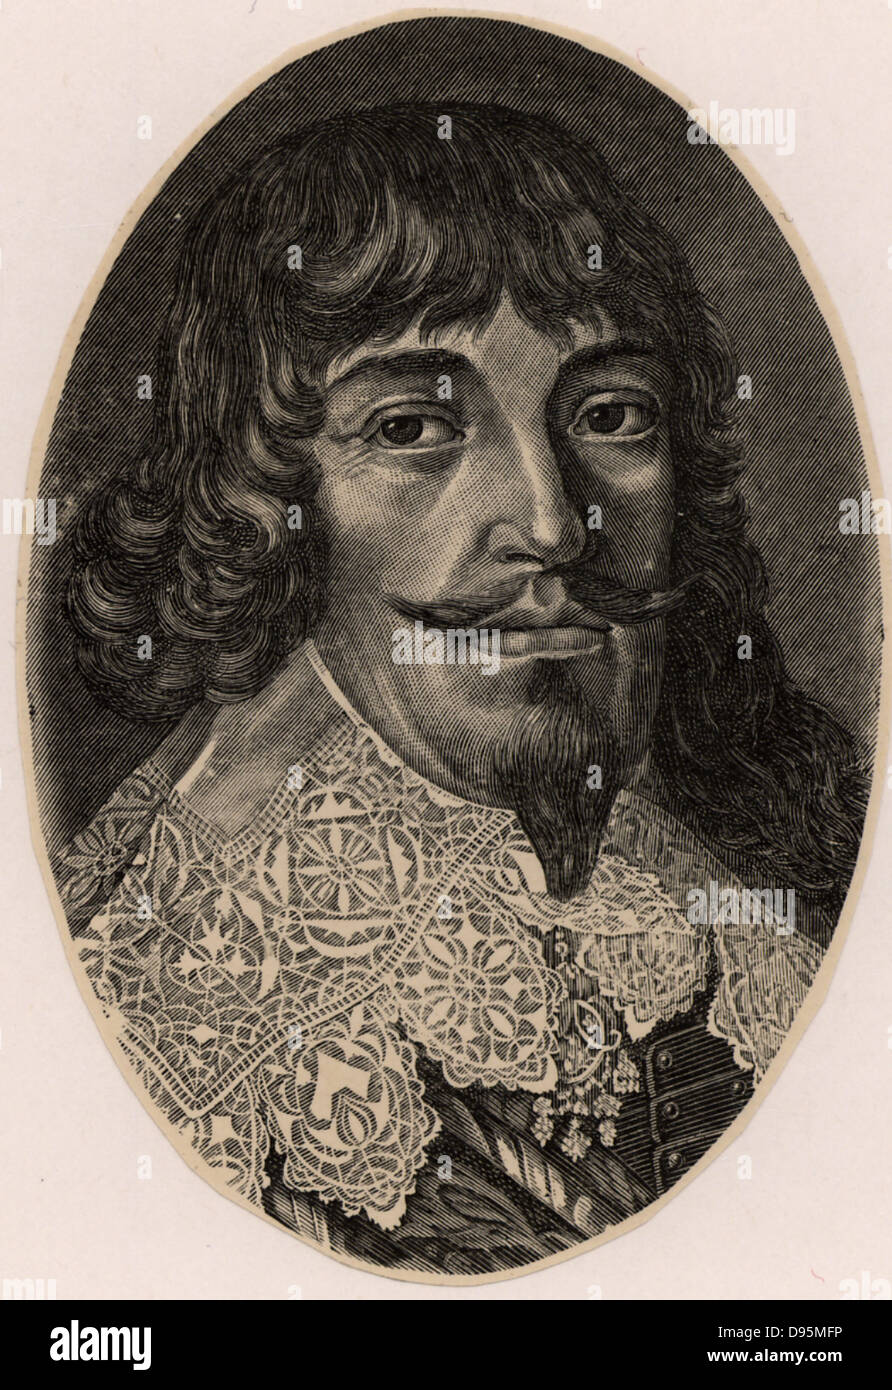 Bernhard, duca di Weimar (1604-1639). Nella guerra dei Trent anni (1618-1648) ha lottato per la causa protestante sotto il banner di Gustavo Adolfo. Incisione. Foto Stock